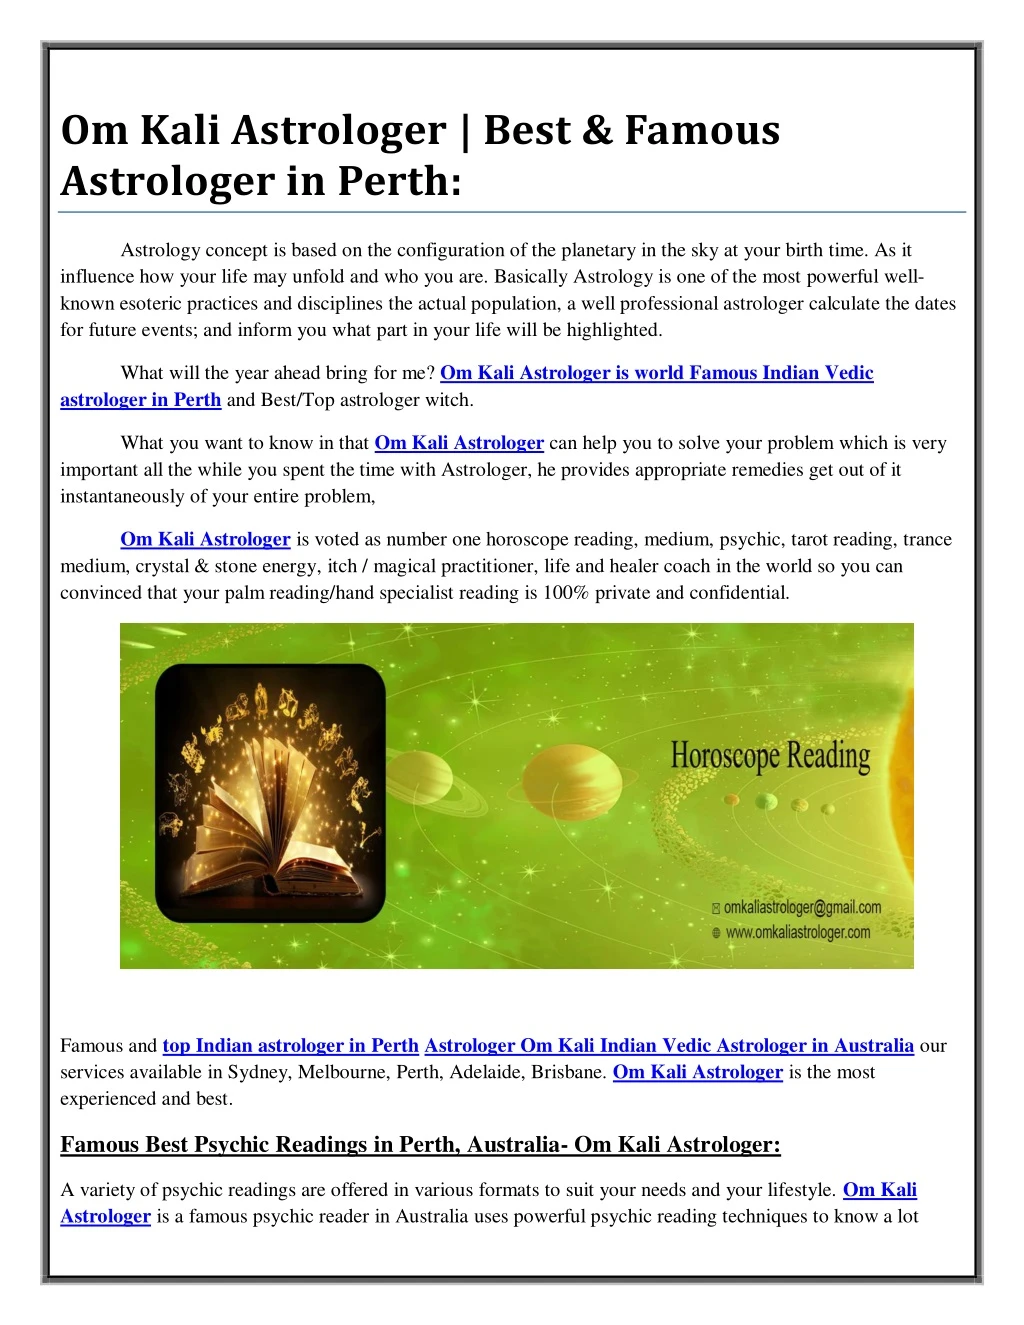 om kali astrologer best famous astrologer in perth